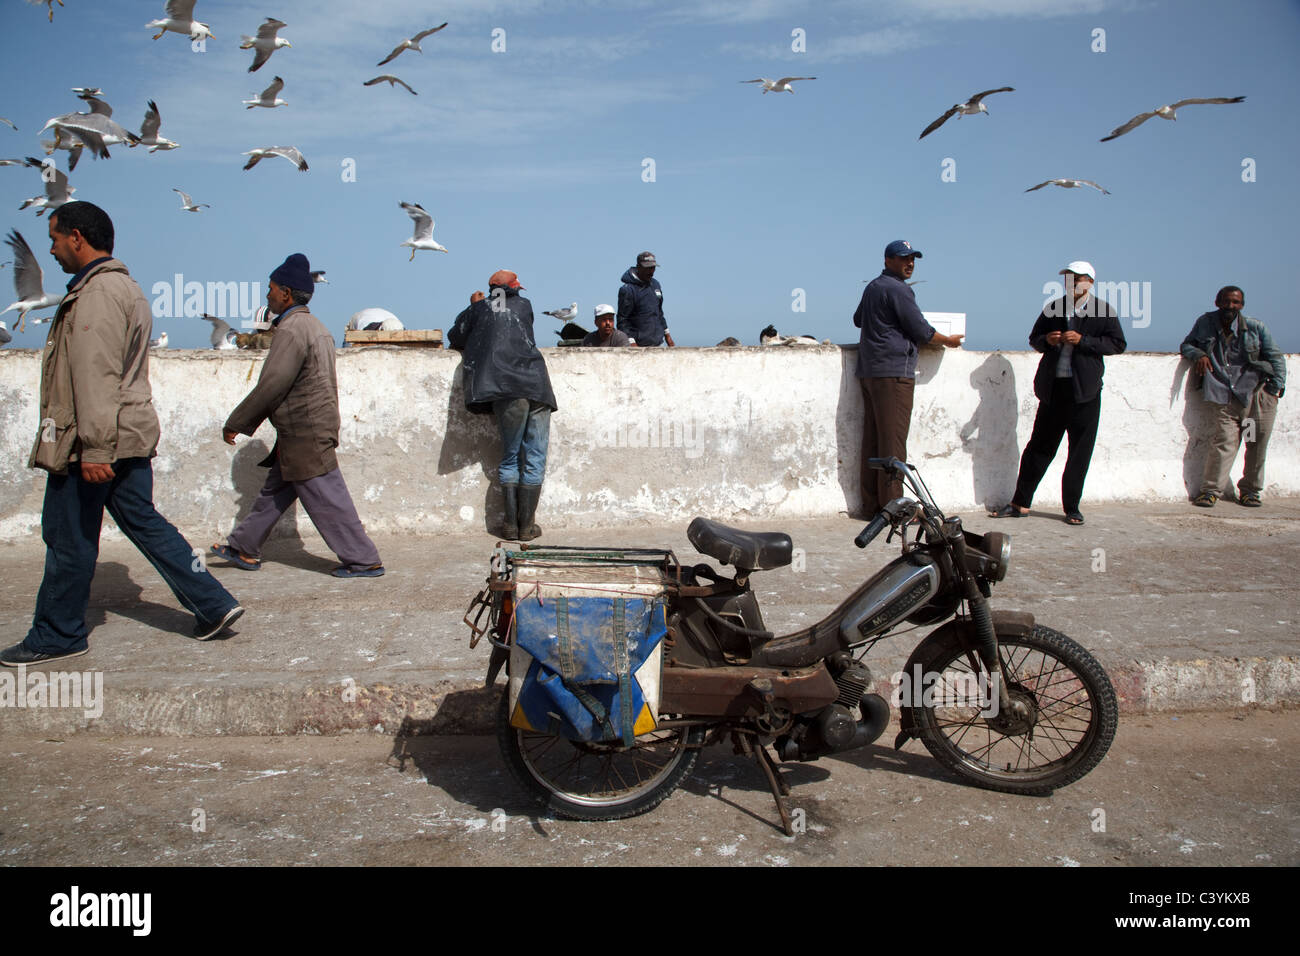 La gente trabaja en el mercado de pescado en la costa del Atlántico en Essaouira, Marruecos Foto de stock